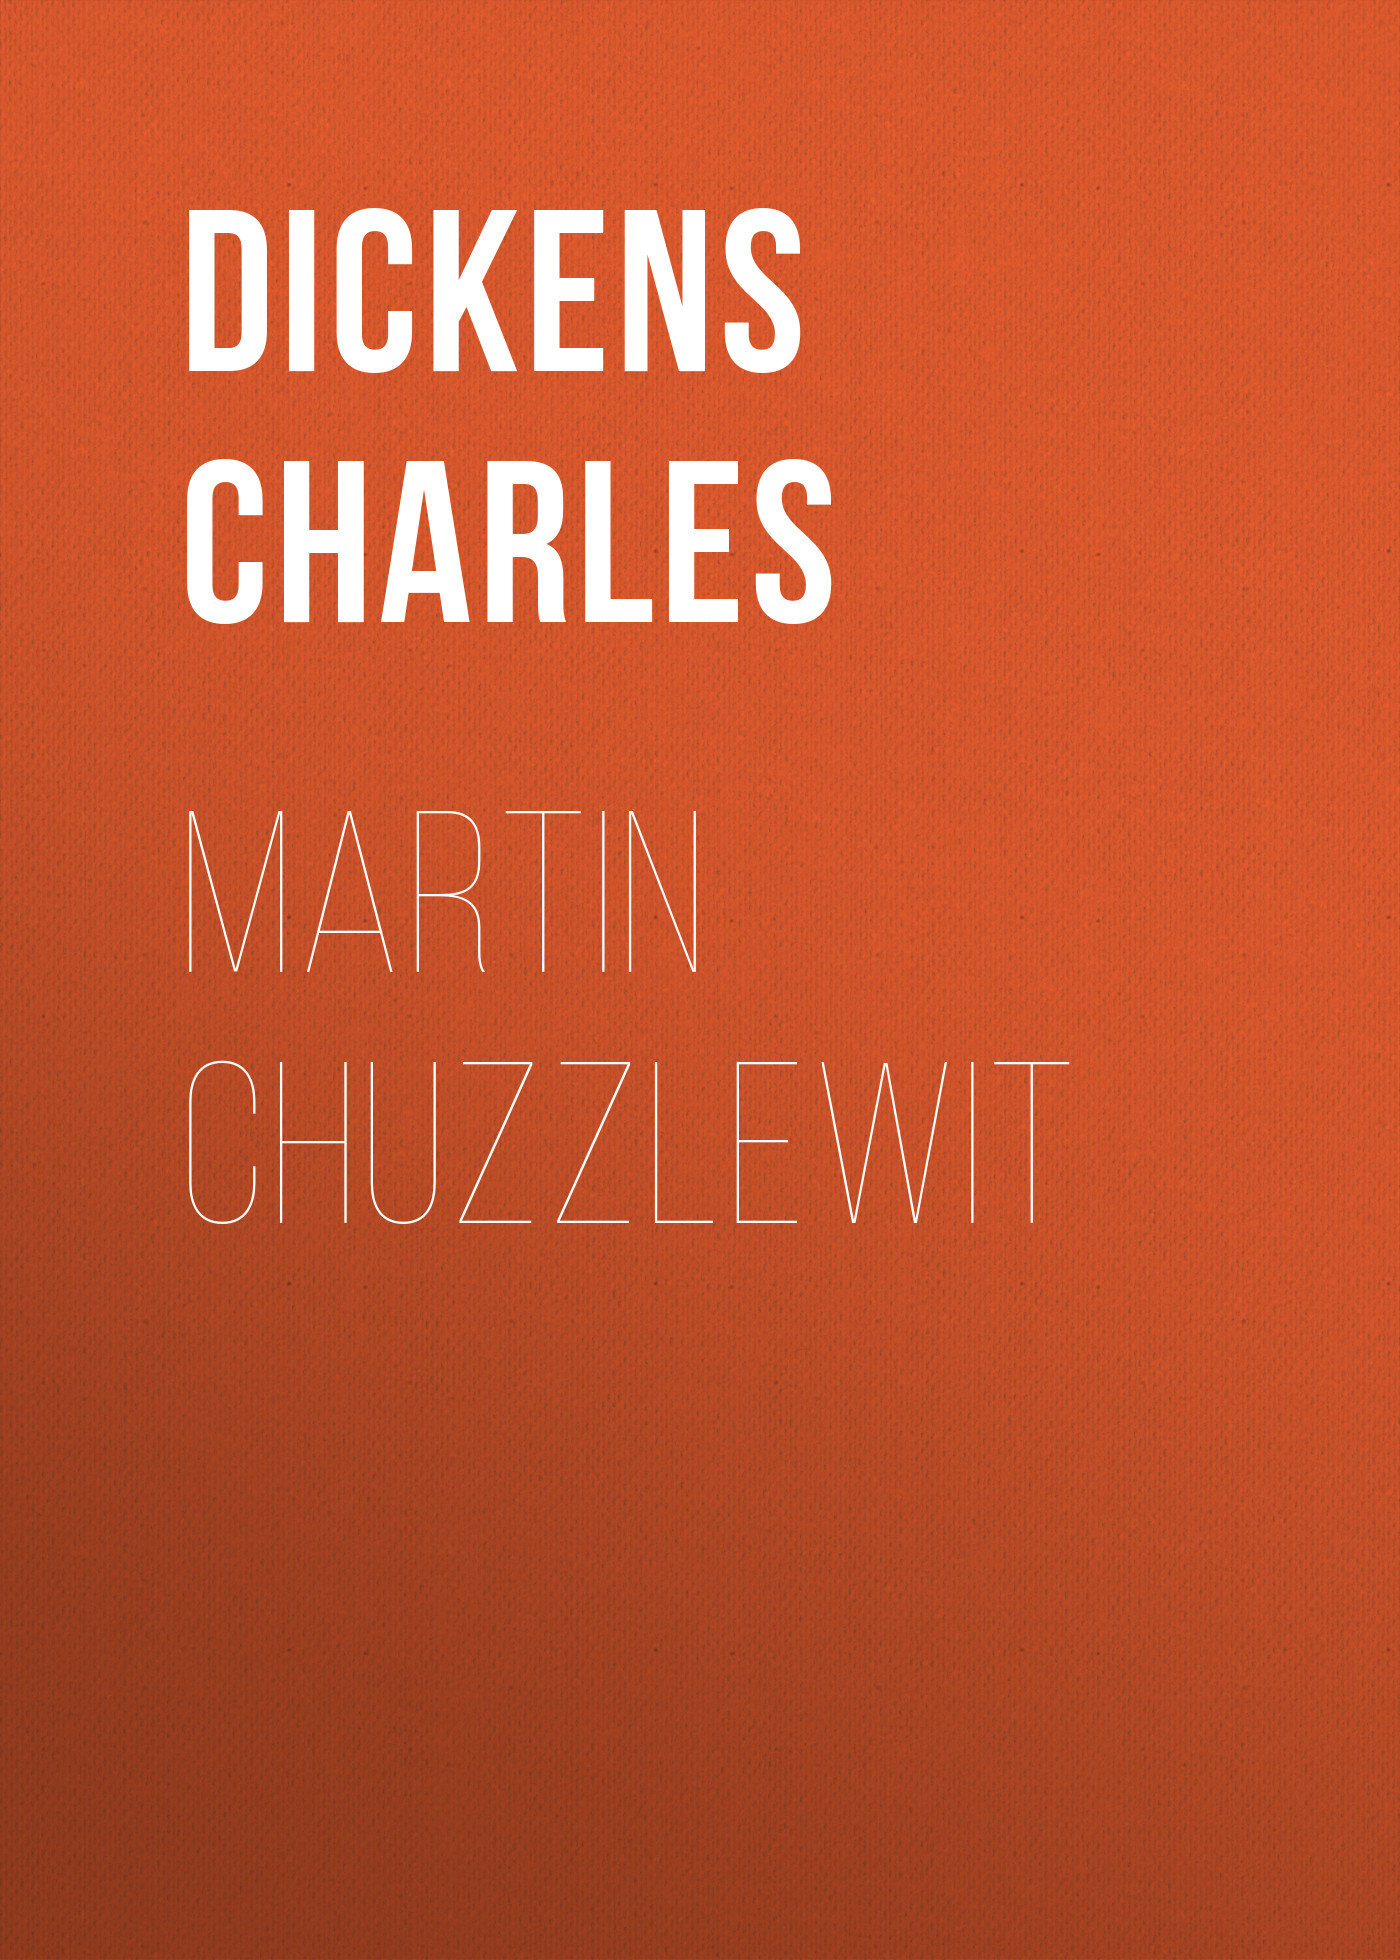 Книга Martin Chuzzlewit из серии , созданная Charles Dickens, может относится к жанру Зарубежная старинная литература, Зарубежная классика. Стоимость электронной книги Martin Chuzzlewit с идентификатором 25092596 составляет 0 руб.